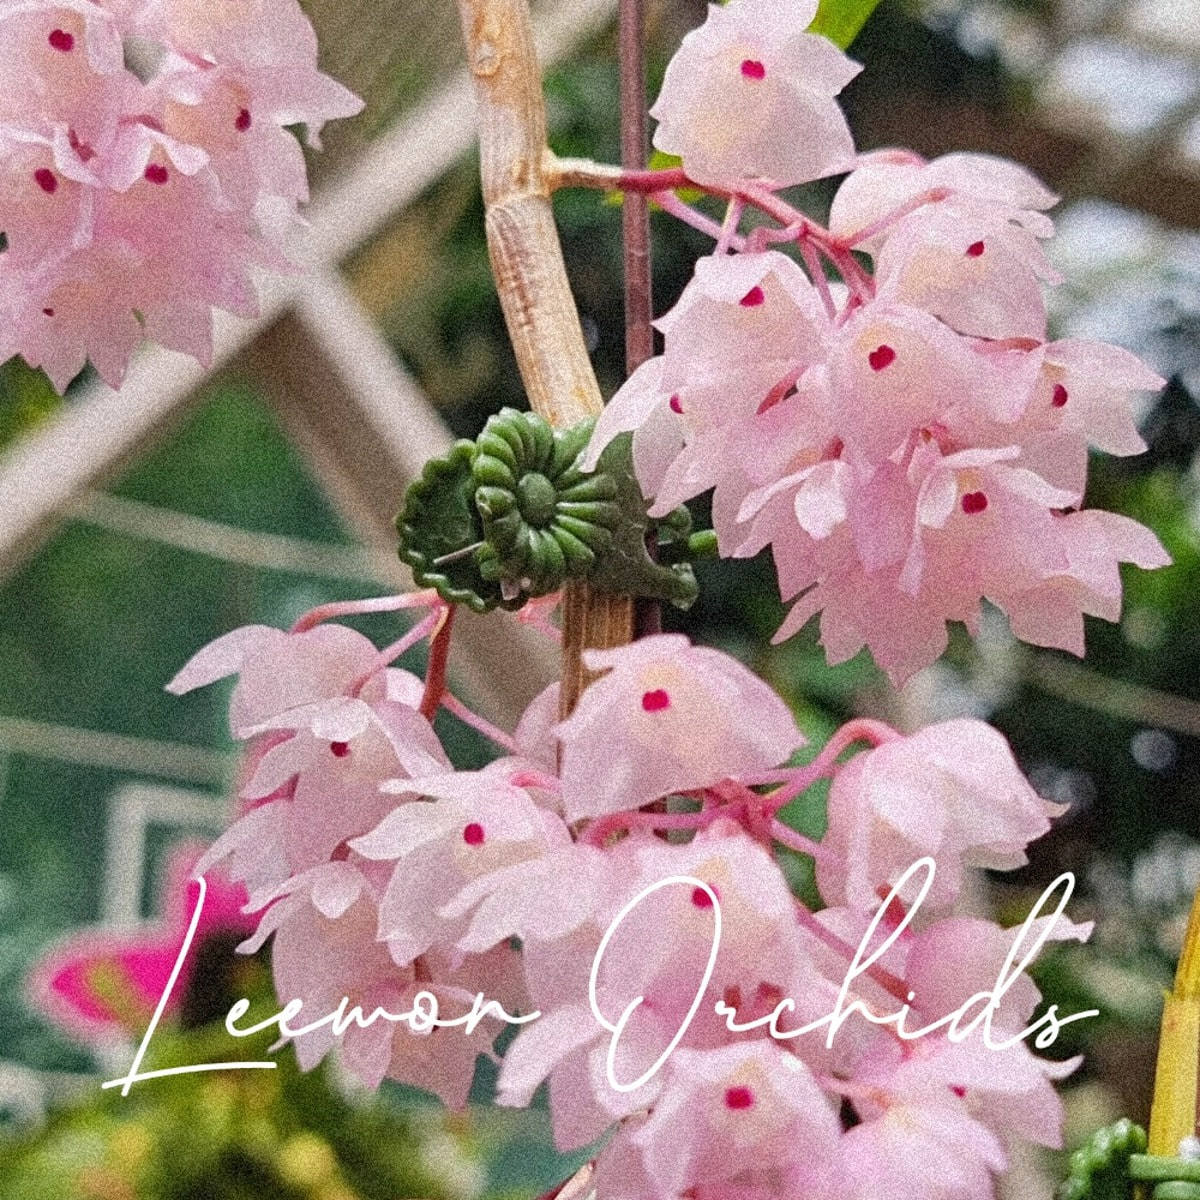 덴드로비움 링규엘라 Dendrobium linguella (온라인 한정재고: 1)